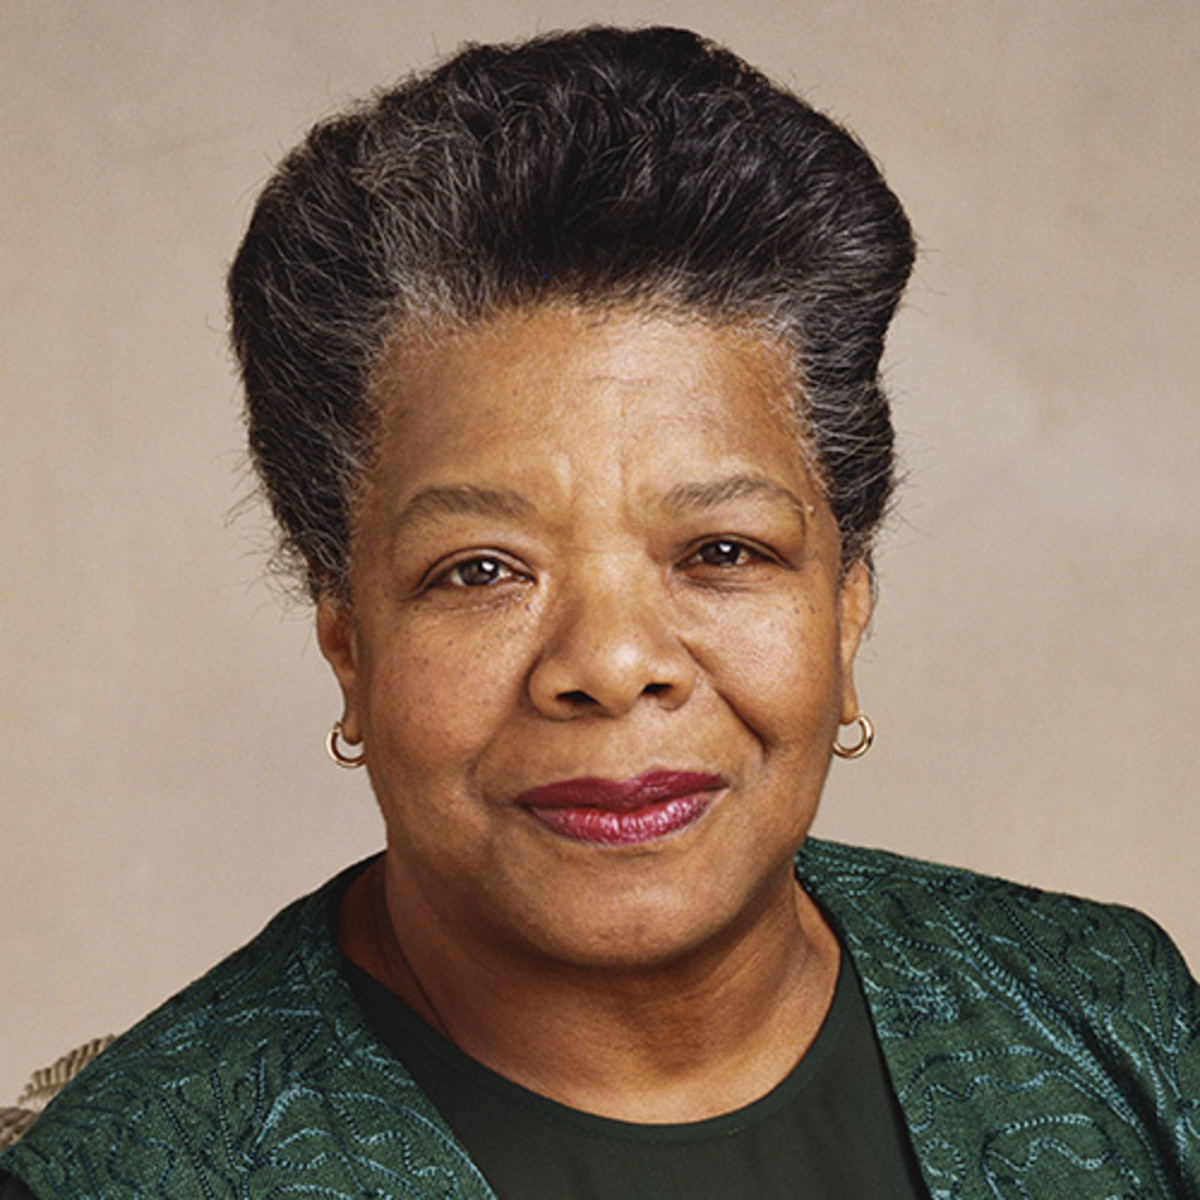   Nhà thơ nổi tiếng người Mỹ- Maya Angelou  